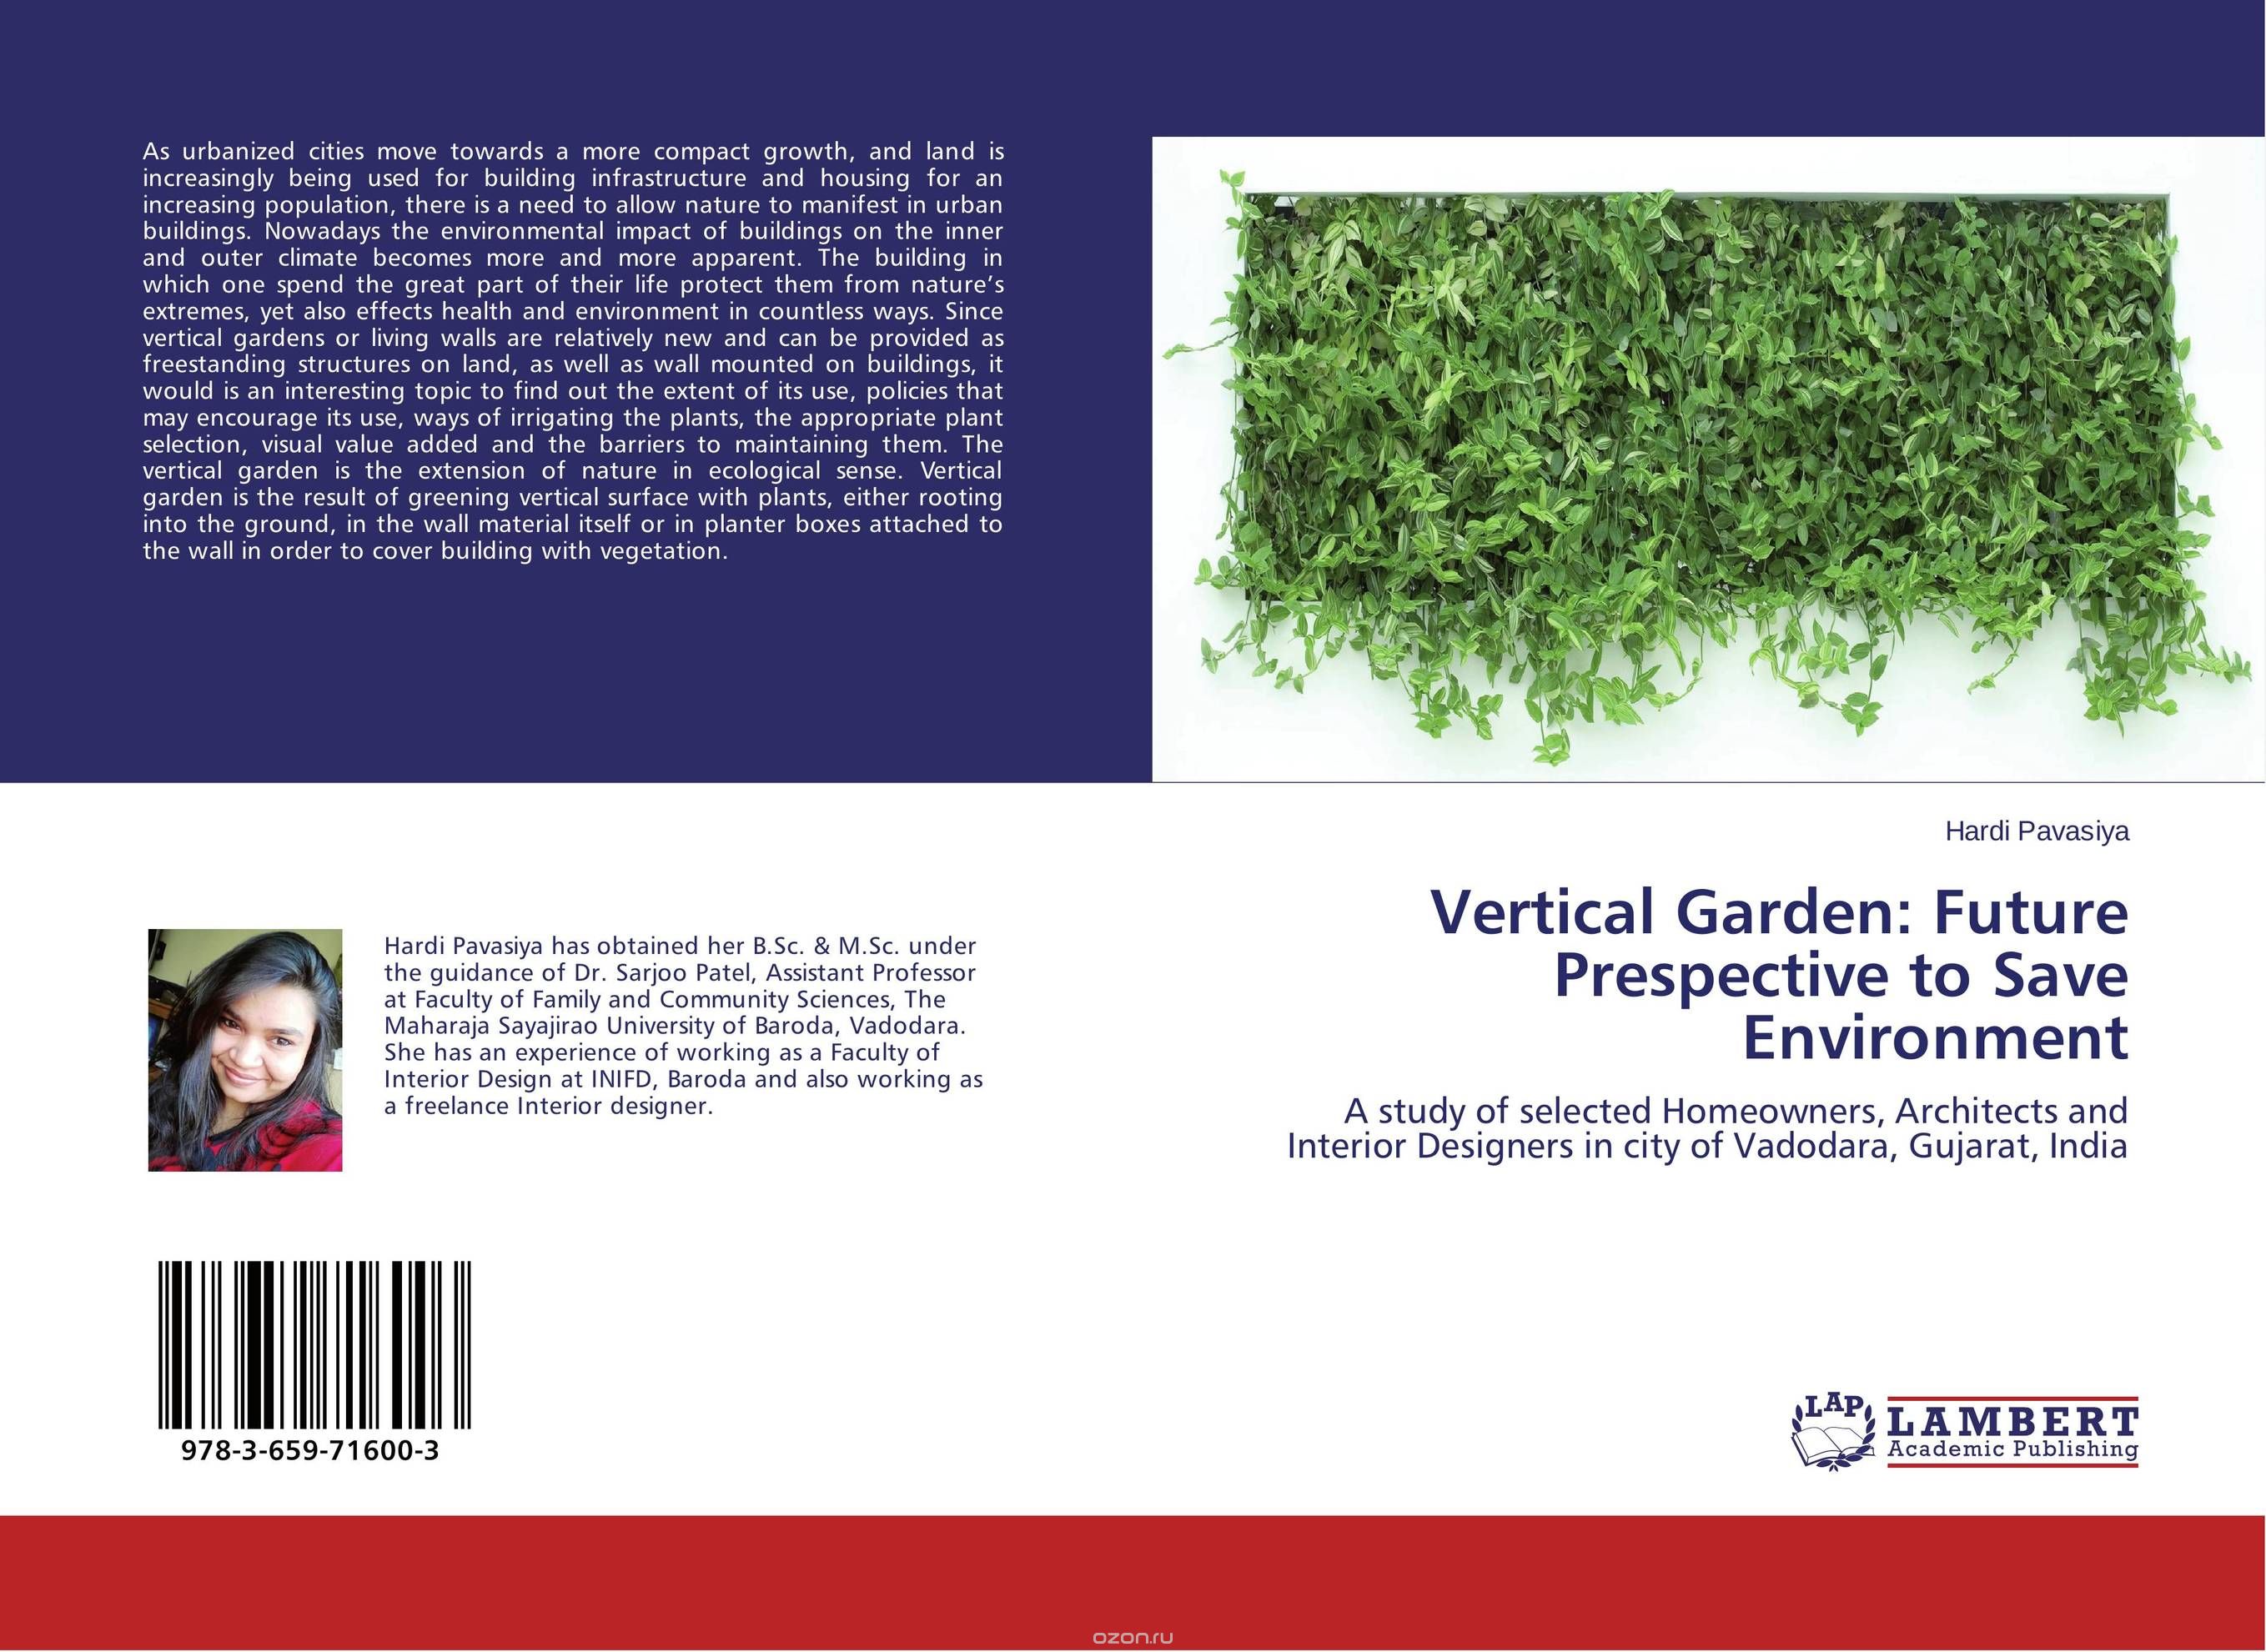 Vertical Garden: Future Prespective to Save Environment